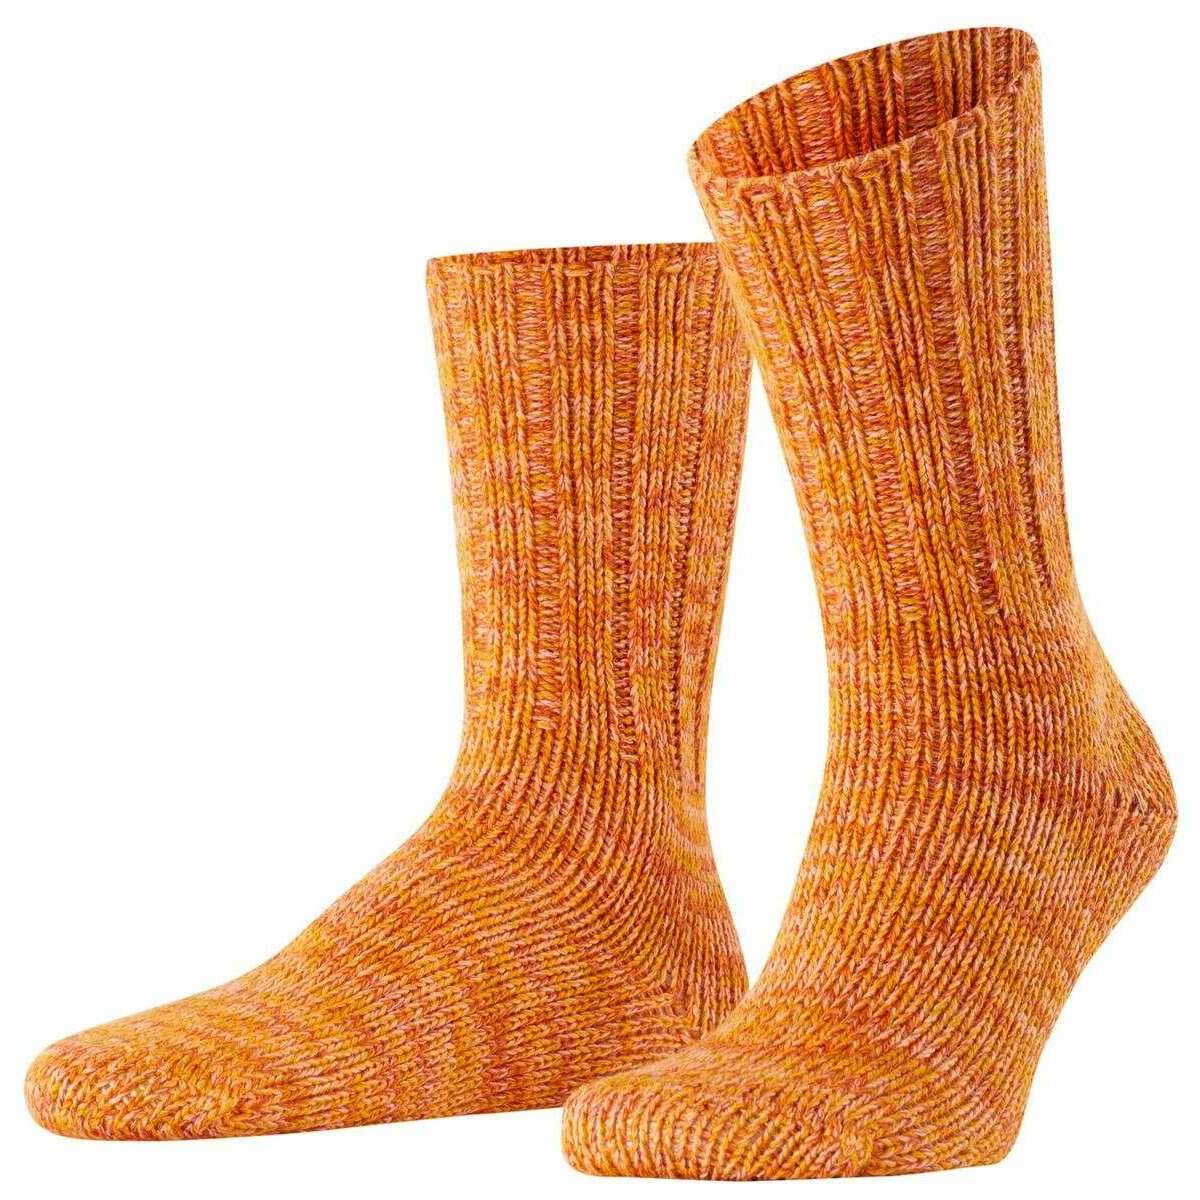 Falke Brooklyn Socks - Mandarin Orange